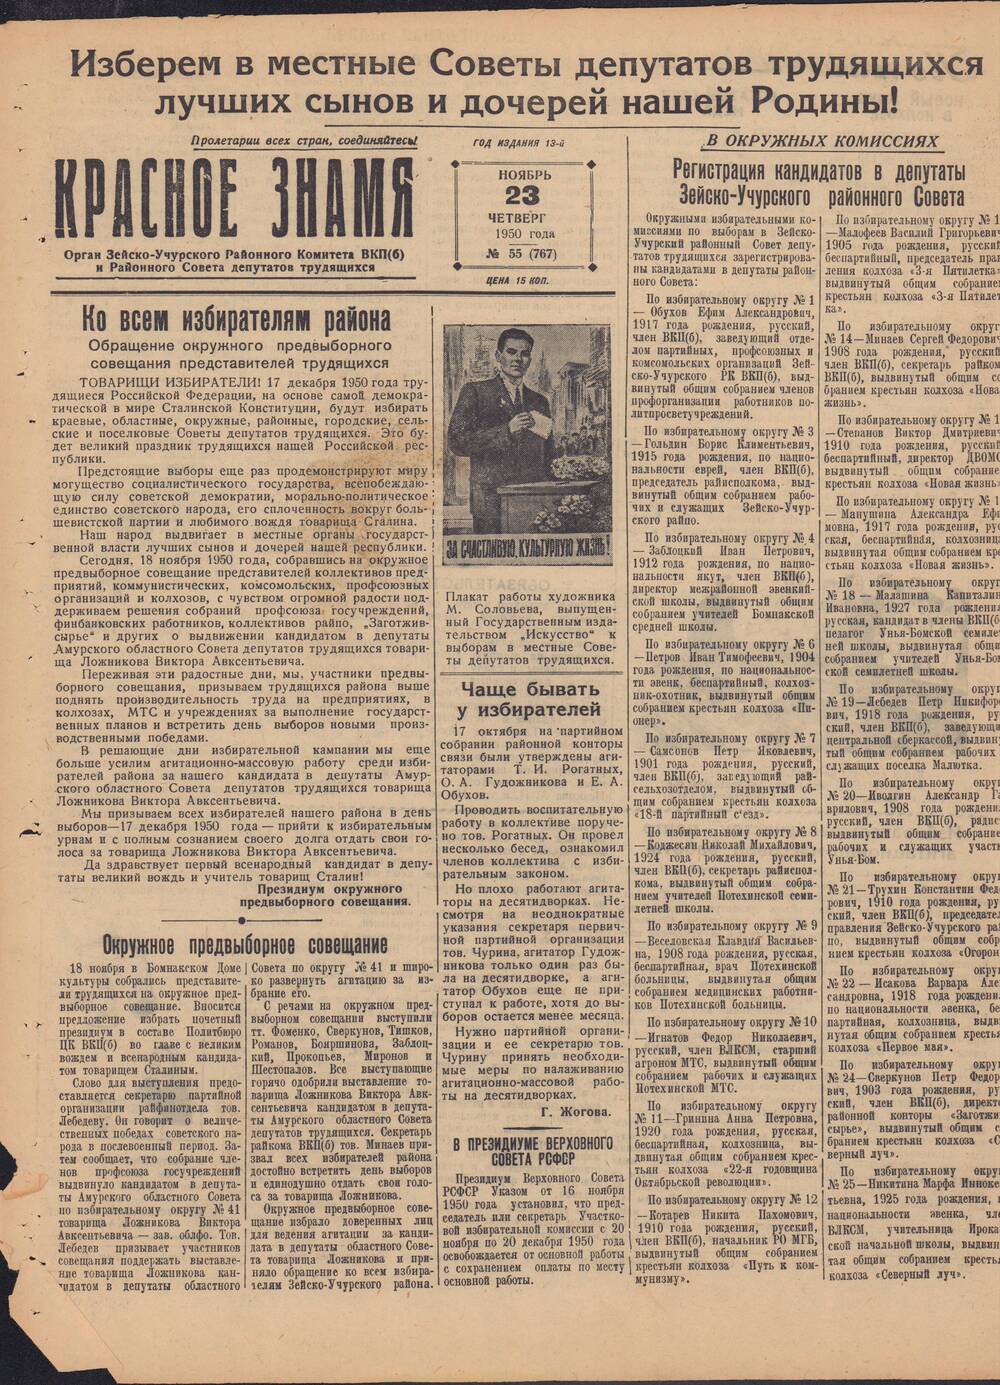 Газета Красное знамя №55 (767) от 23 ноября 1950 года.